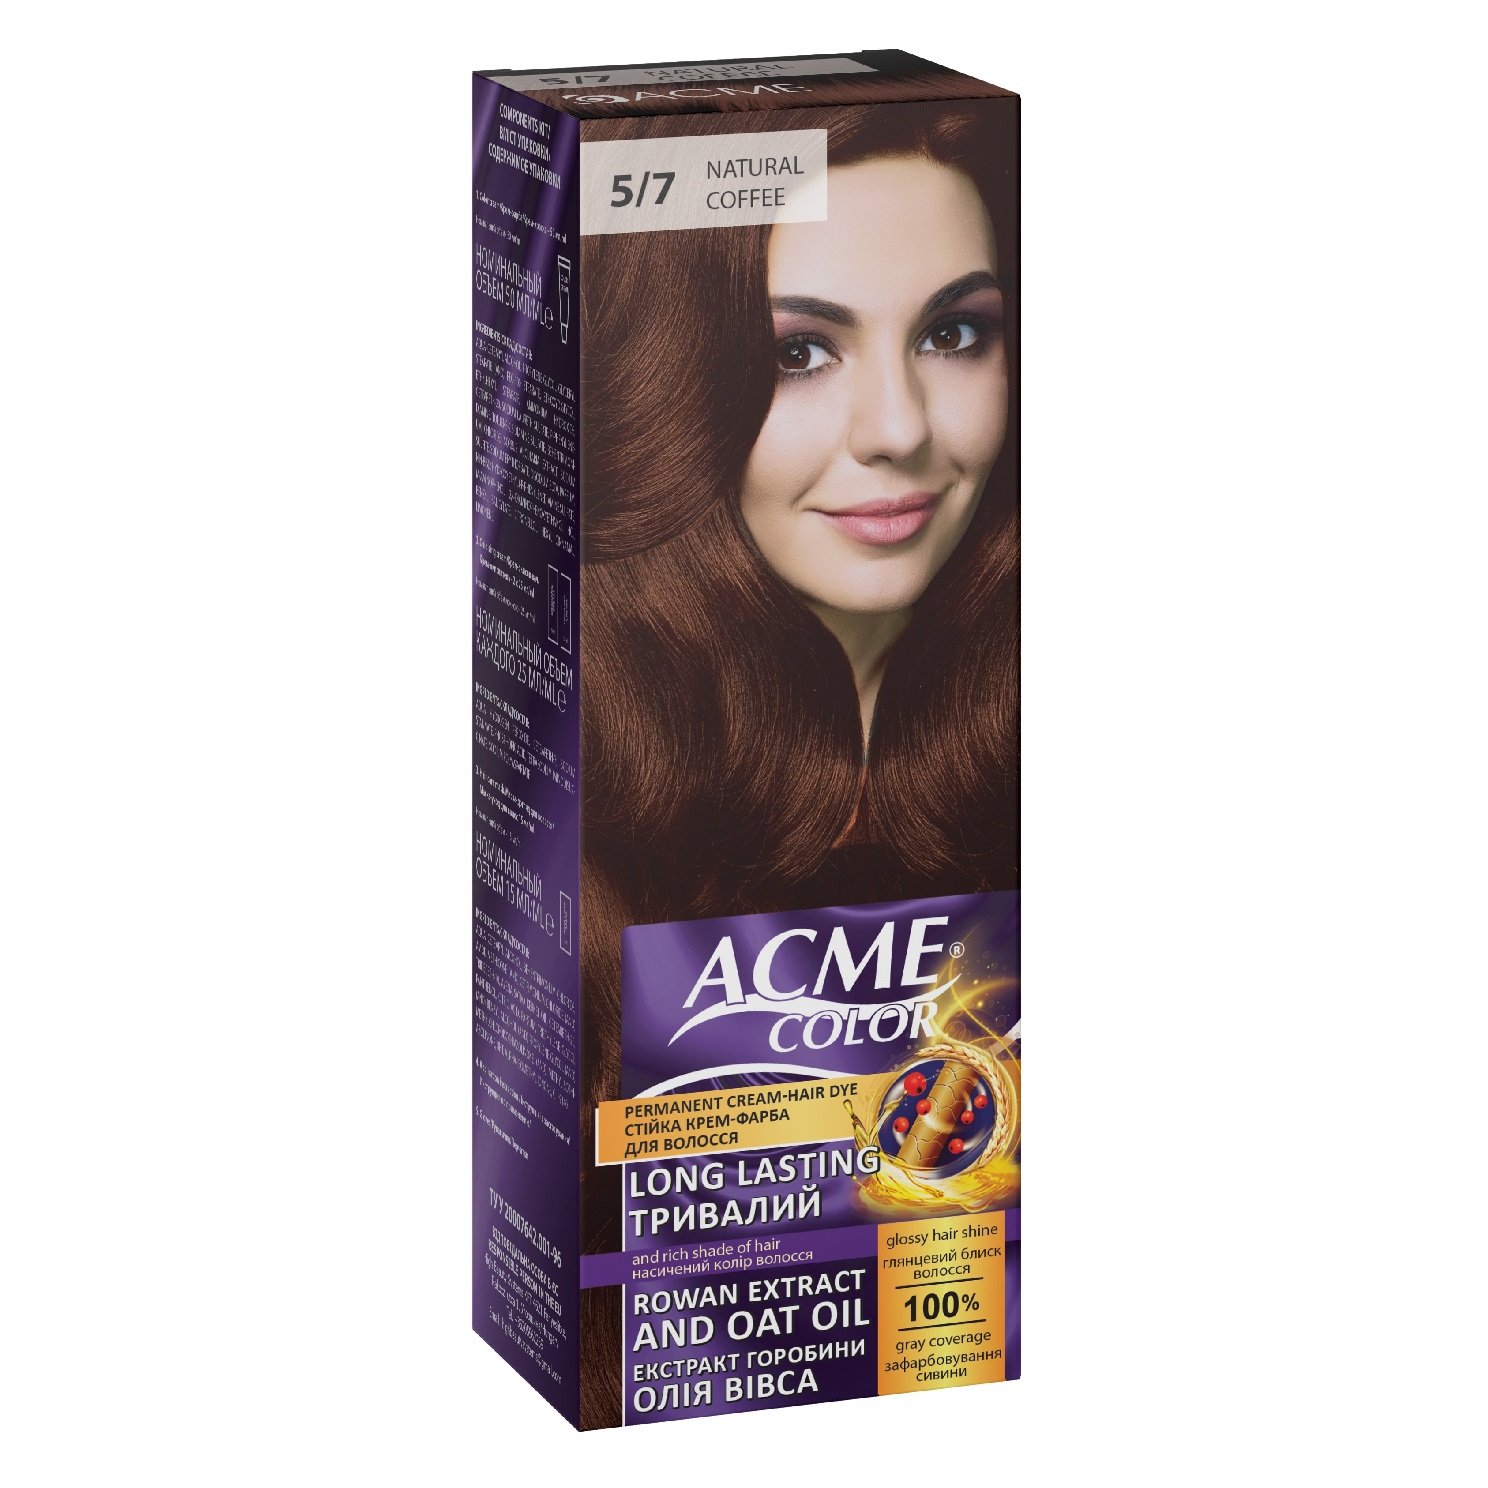 Крем-фарба для волосся Acme Color EXP, відтінок 5/7 (Натуральна кава), 115 мл - фото 1